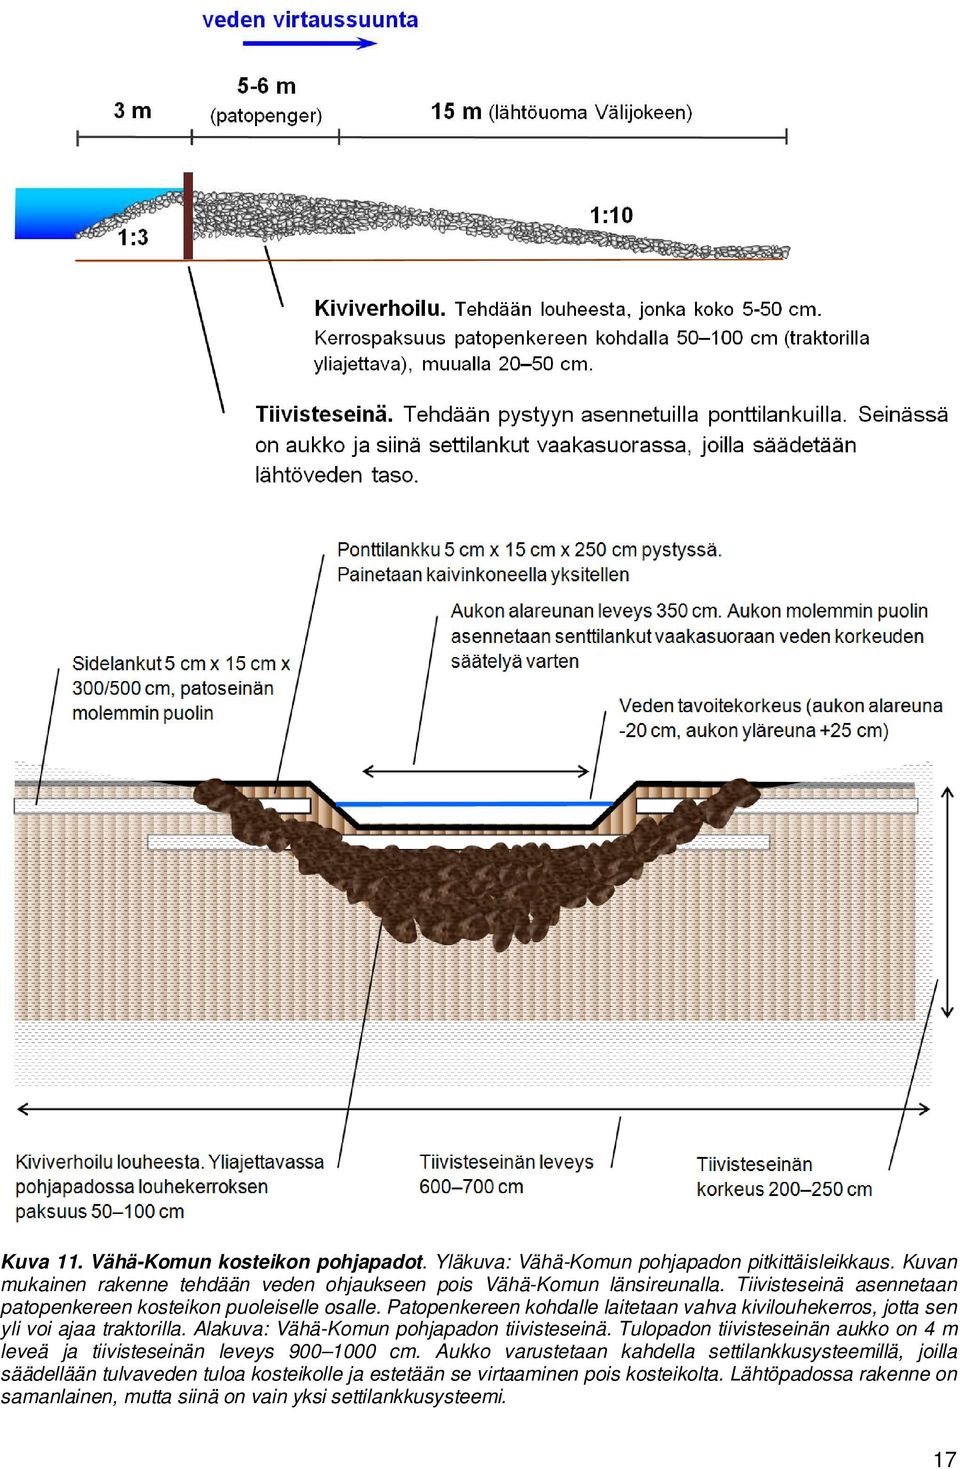 Alakuva: Vähä-Komun pohjapadon tiivisteseinä. Tulopadon tiivisteseinän aukko on 4 m leveä ja tiivisteseinän leveys 900 1000 cm.